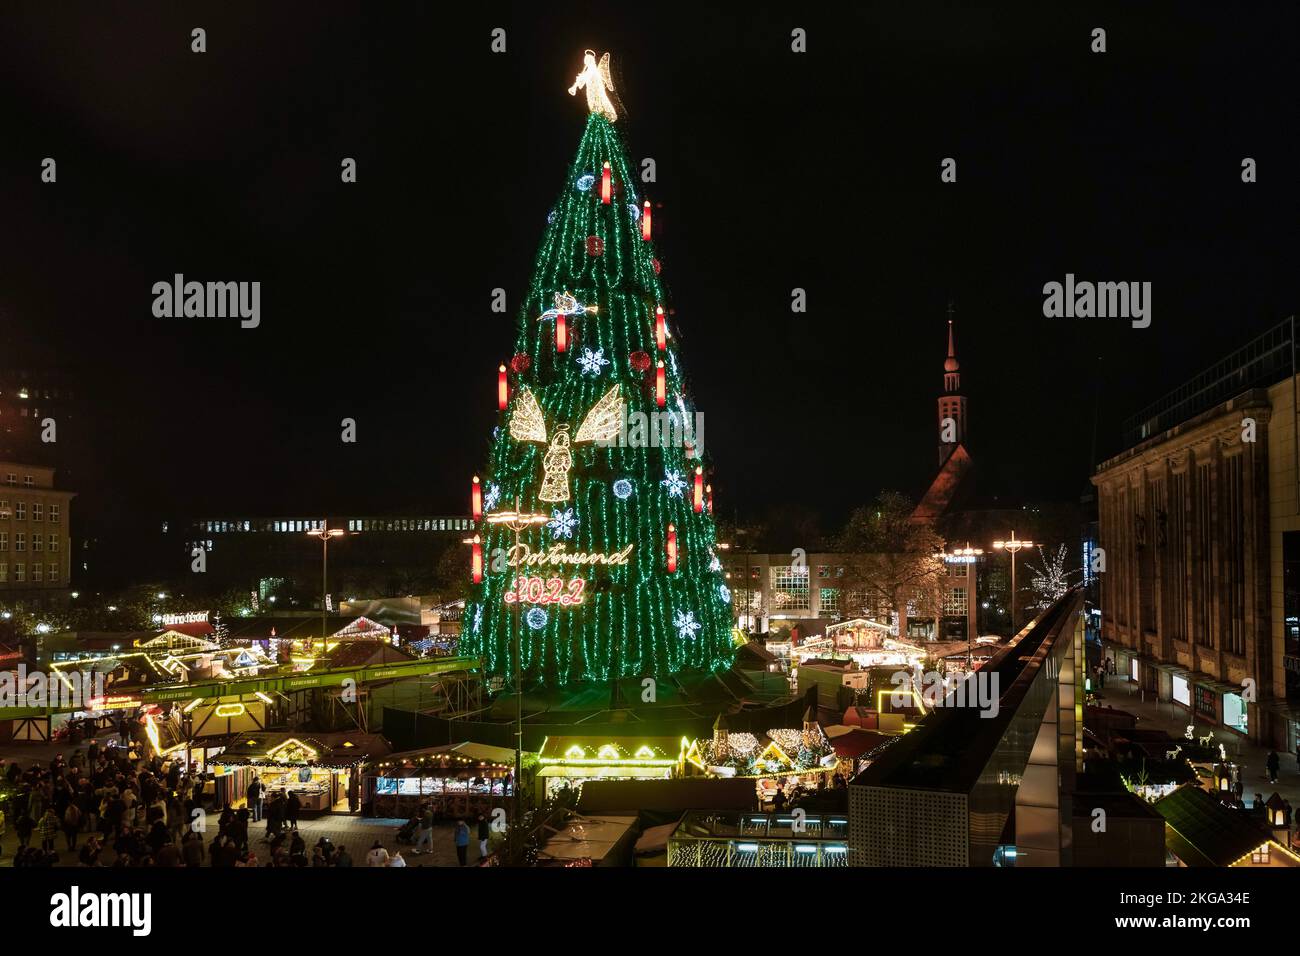 Dortmund, 22. November 2022: Der größte Weihnachtsbaum der Welt auf dem Dortmunder Weihnachtsmarkt ist 45 Meter hoch, besteht aus 1.000 roten Fichten aus dem Sauerland und wird mit 48.000 LED-Leuchten aufgehängt. Ein vier Meter hoher Engel leuchtet auf der Oberseite. --- Dortmund, 22.11.2022: Der größte Weihnachtsbaum der Welt auf dem Dortmunder Weihnachtsmarkt ist 45 Meter hoch, besteht aus 1000 Rotfichten aus dem Sauerland und ist mit 48,000 LED-Leuchten ausgestattet. Auf der Spitze leuchtet ein vier Meter großer Engel. Stockfoto